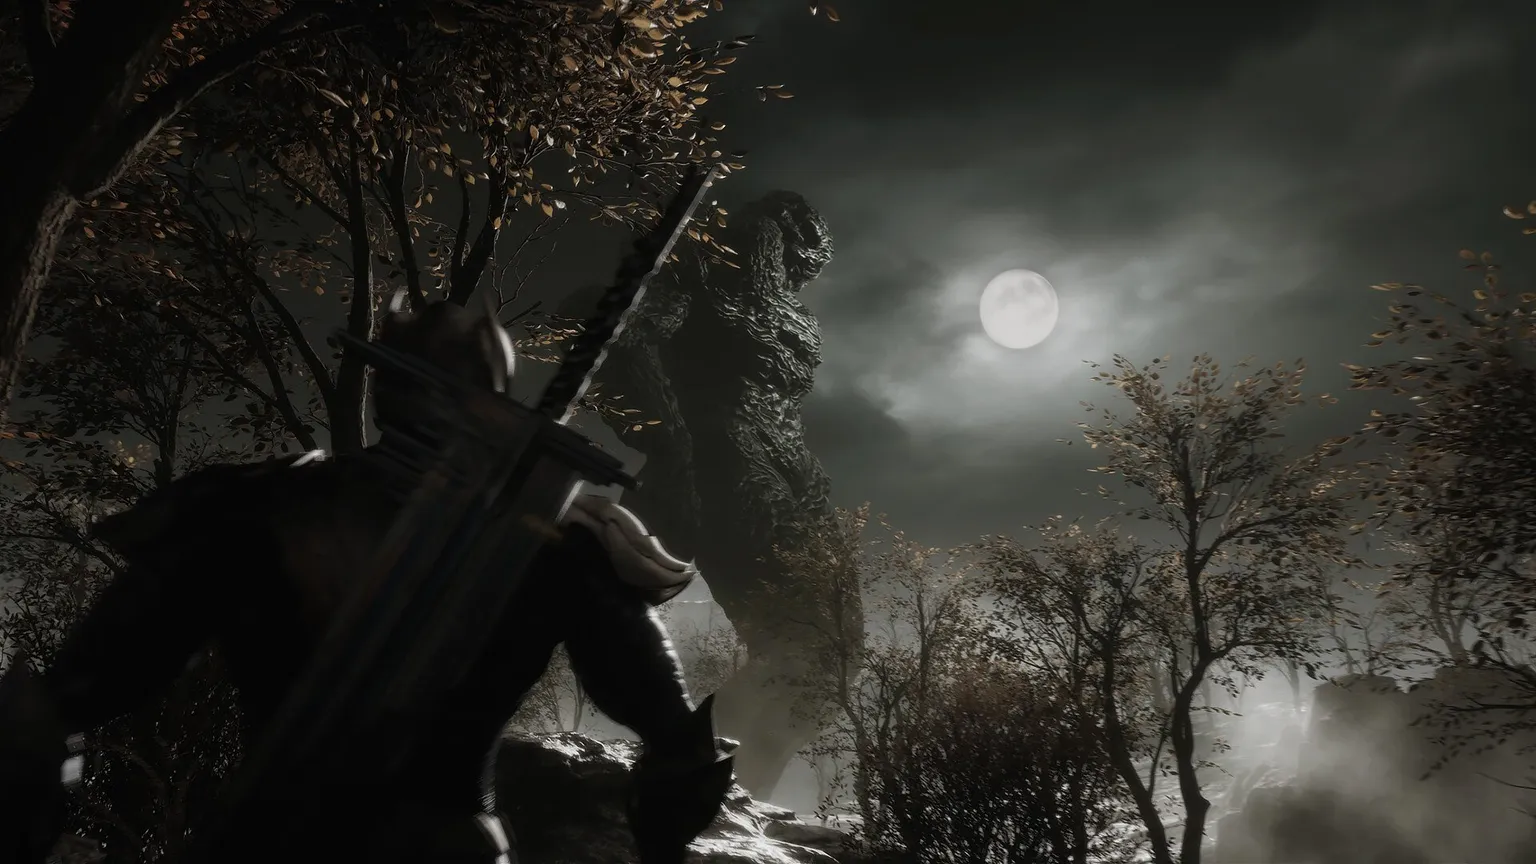 Captura de pantalla que muestra al personaje con una espada mirando hacia el cielo oscuro y nublado con luna llena y una enorme criatura parecida a una piedra tipo Godzilla sobre él.